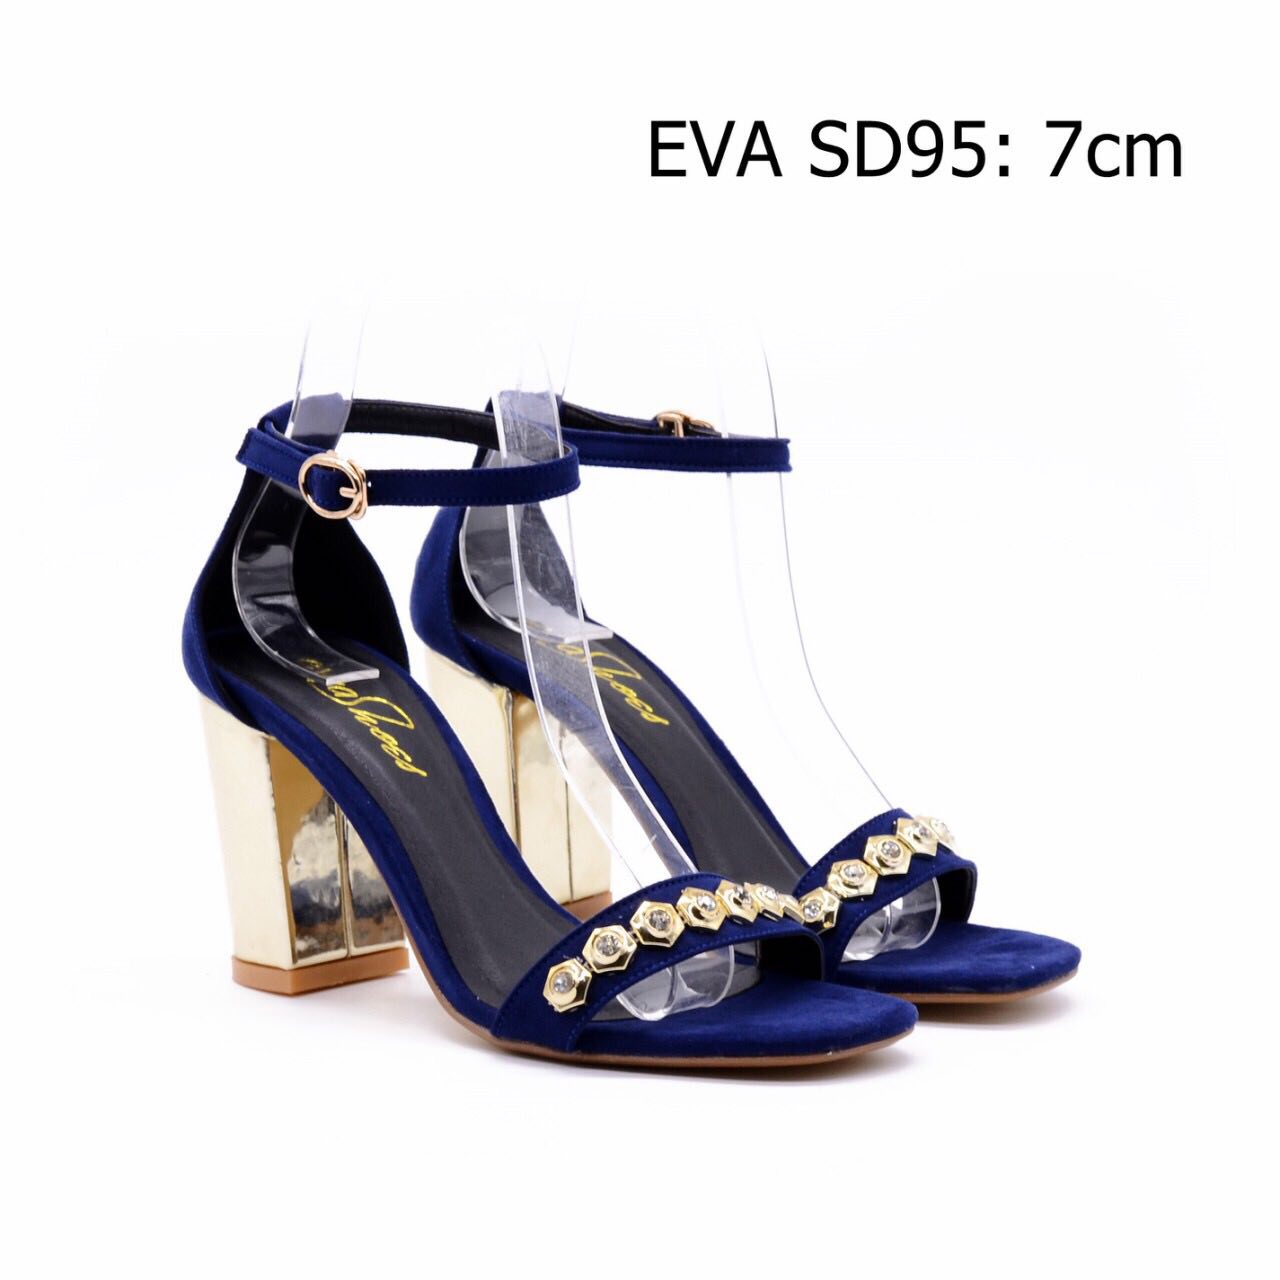 Giày xăng đan cao gót EVA SD95 cao 7cm phối họa tiết trang nhã, nổi bật.